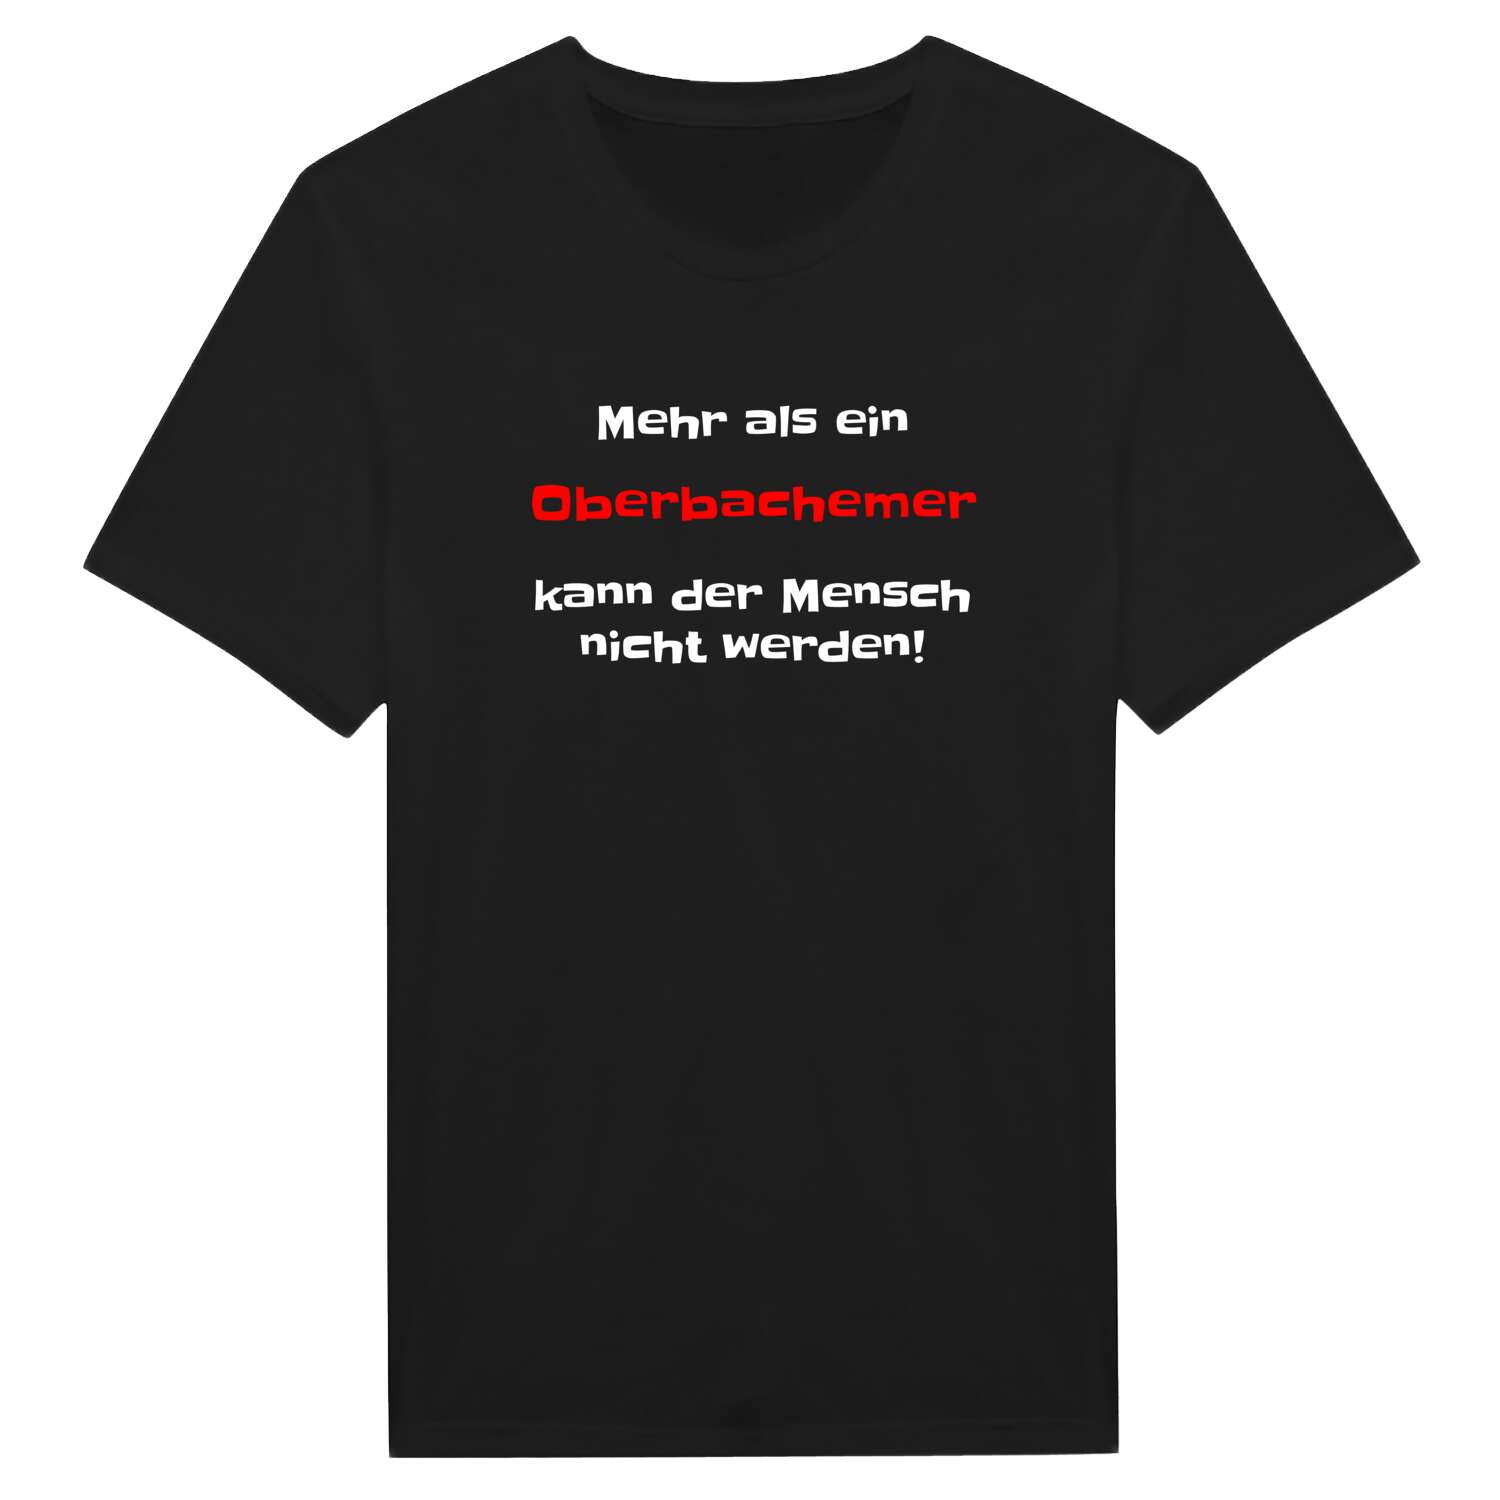 Oberbachem T-Shirt »Mehr als ein«